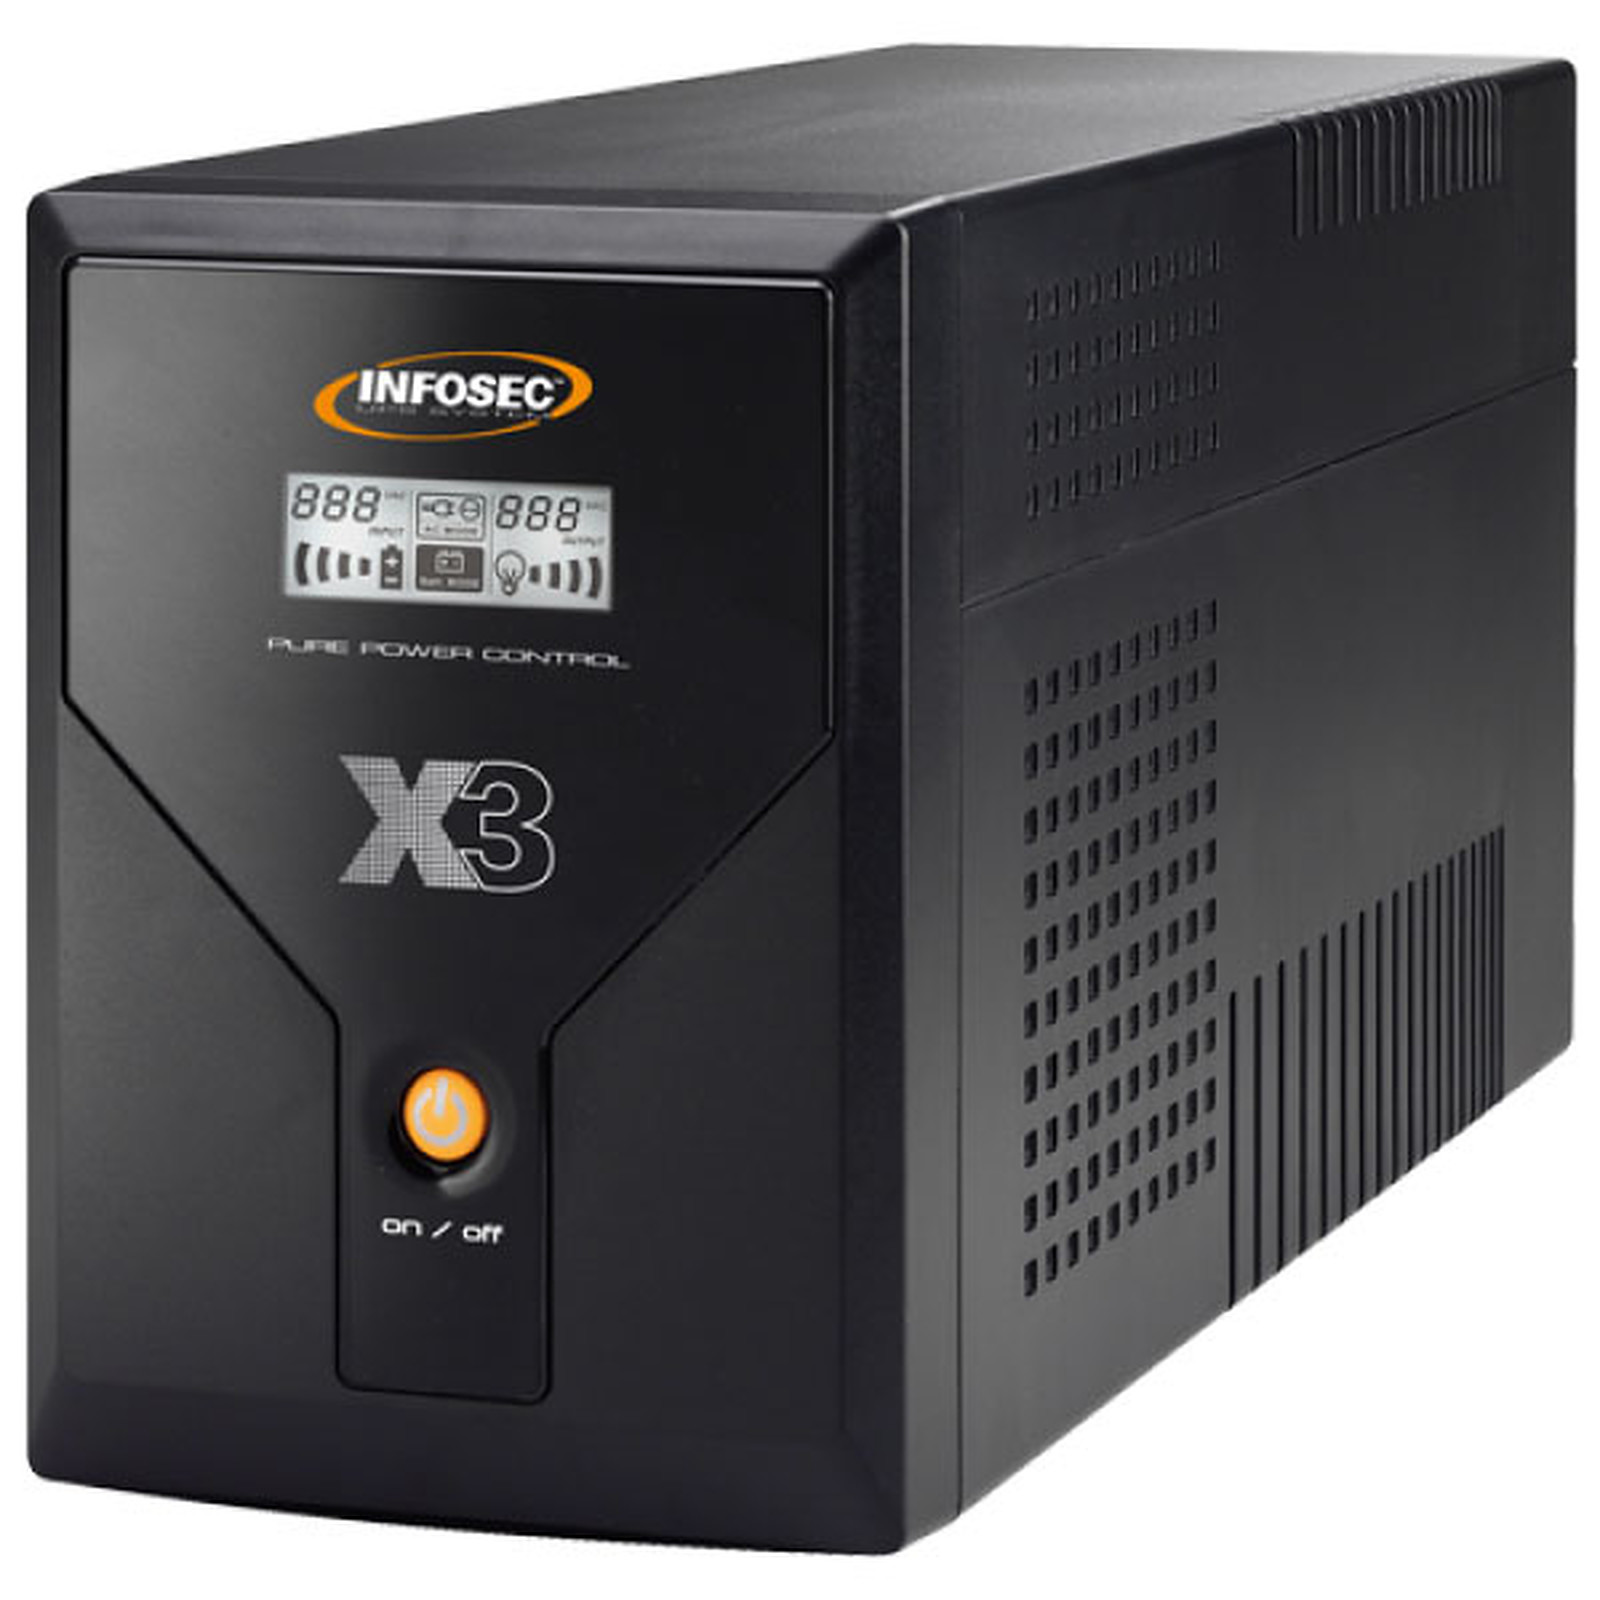 Infosec X3 EX LCD USB 1600 - Onduleur Infosec